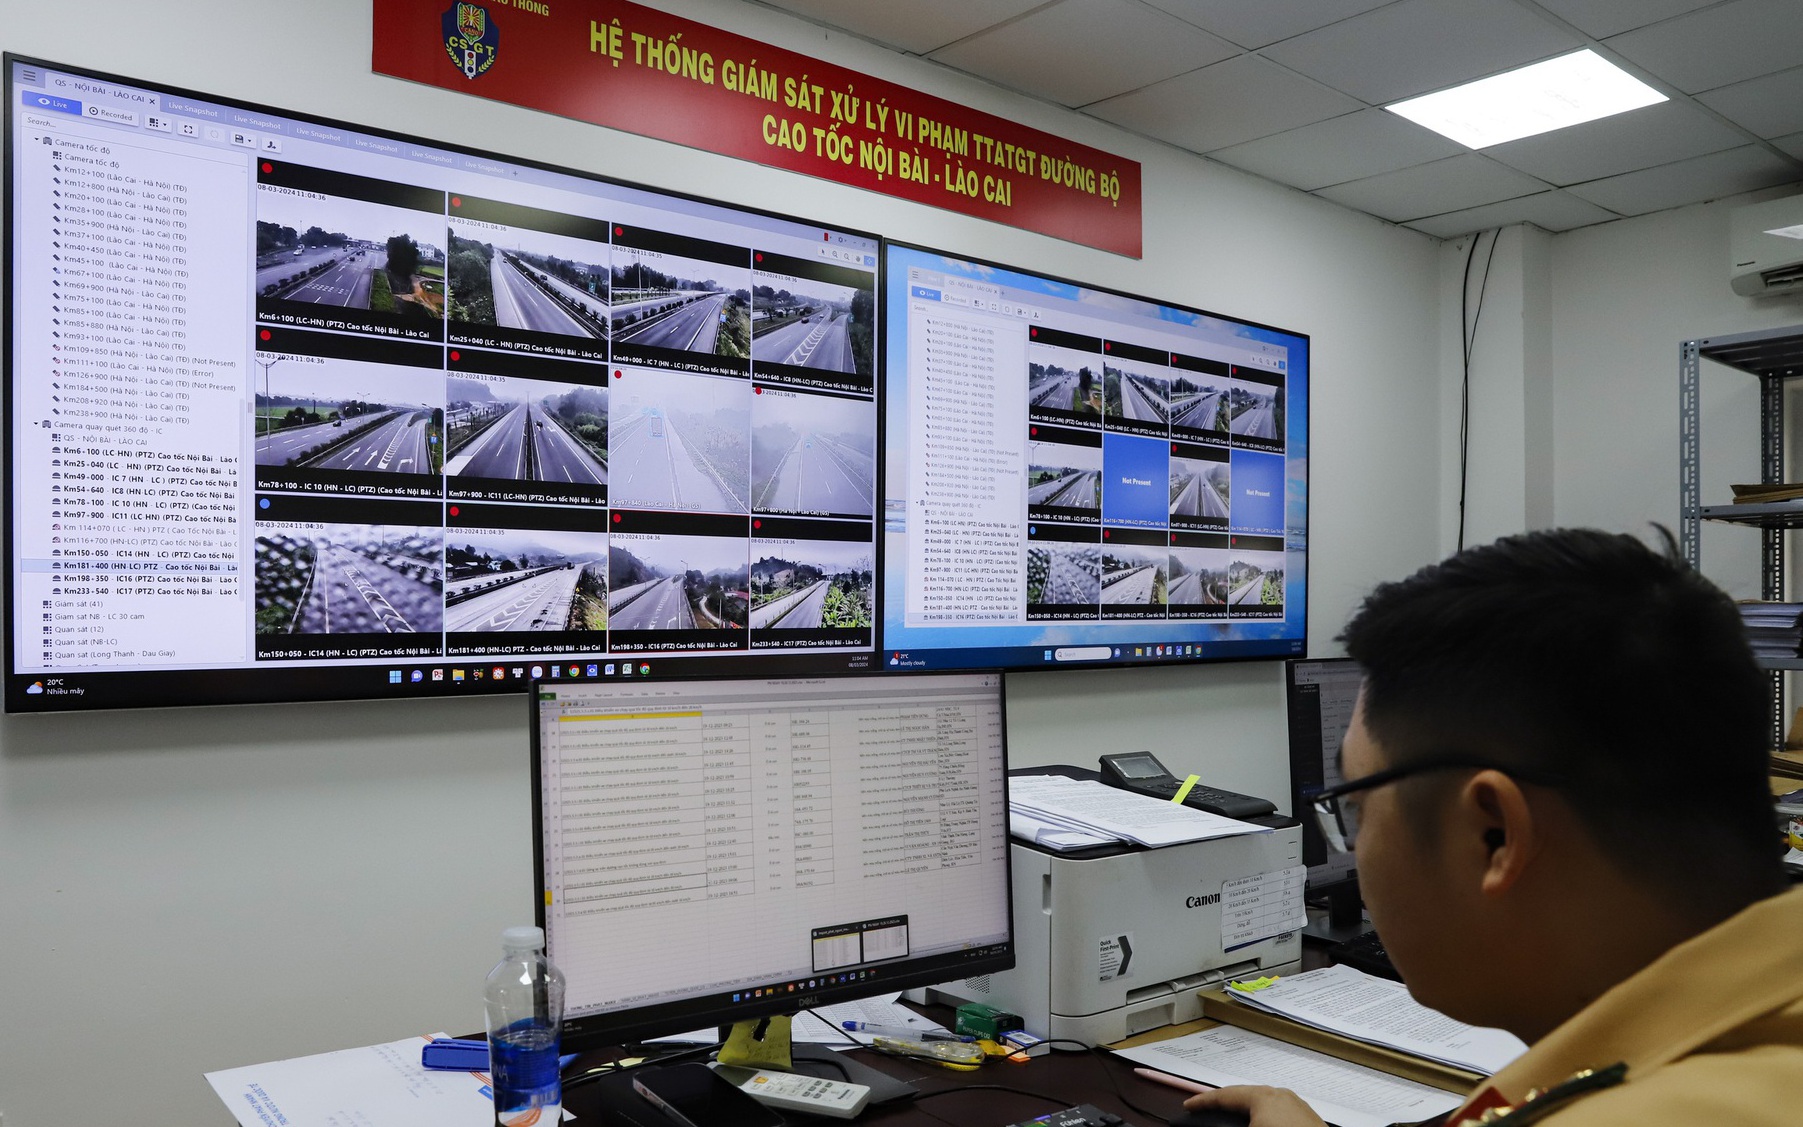 Toàn cảnh "mắt thần" giám sát xử phạt hàng nghìn trường hợp vi phạm trên cao tốc Nội Bài - Lào Cai